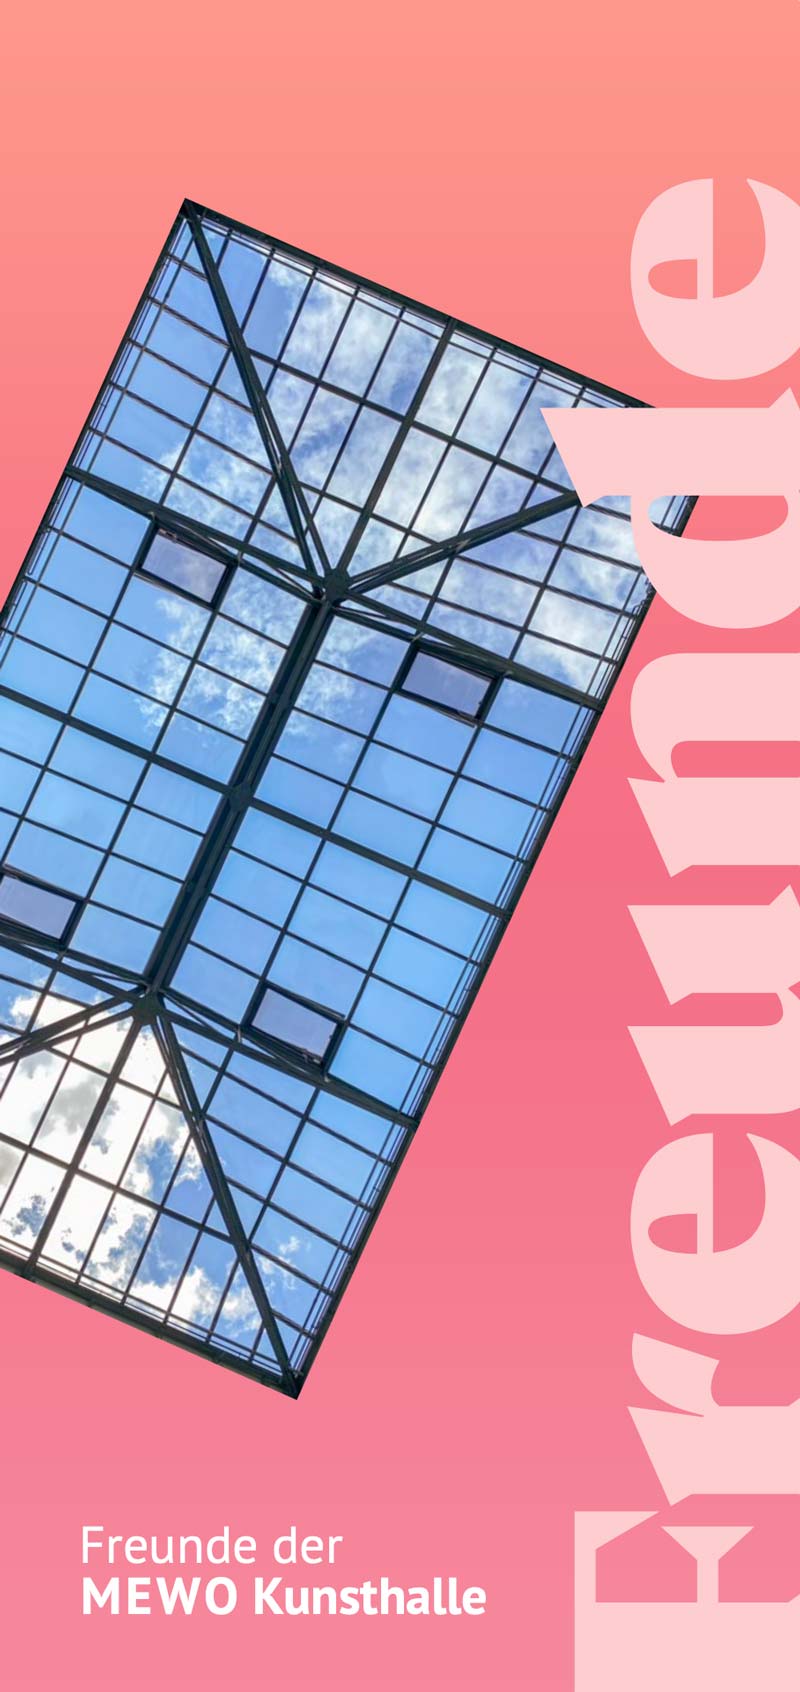 Titelseite des Flyers der Freunde der Mewo Kunsthalle mit dem Glasdach des Lichthofs auf rosafarbenem Hintergrund und dem großen Schriftzug Freunde